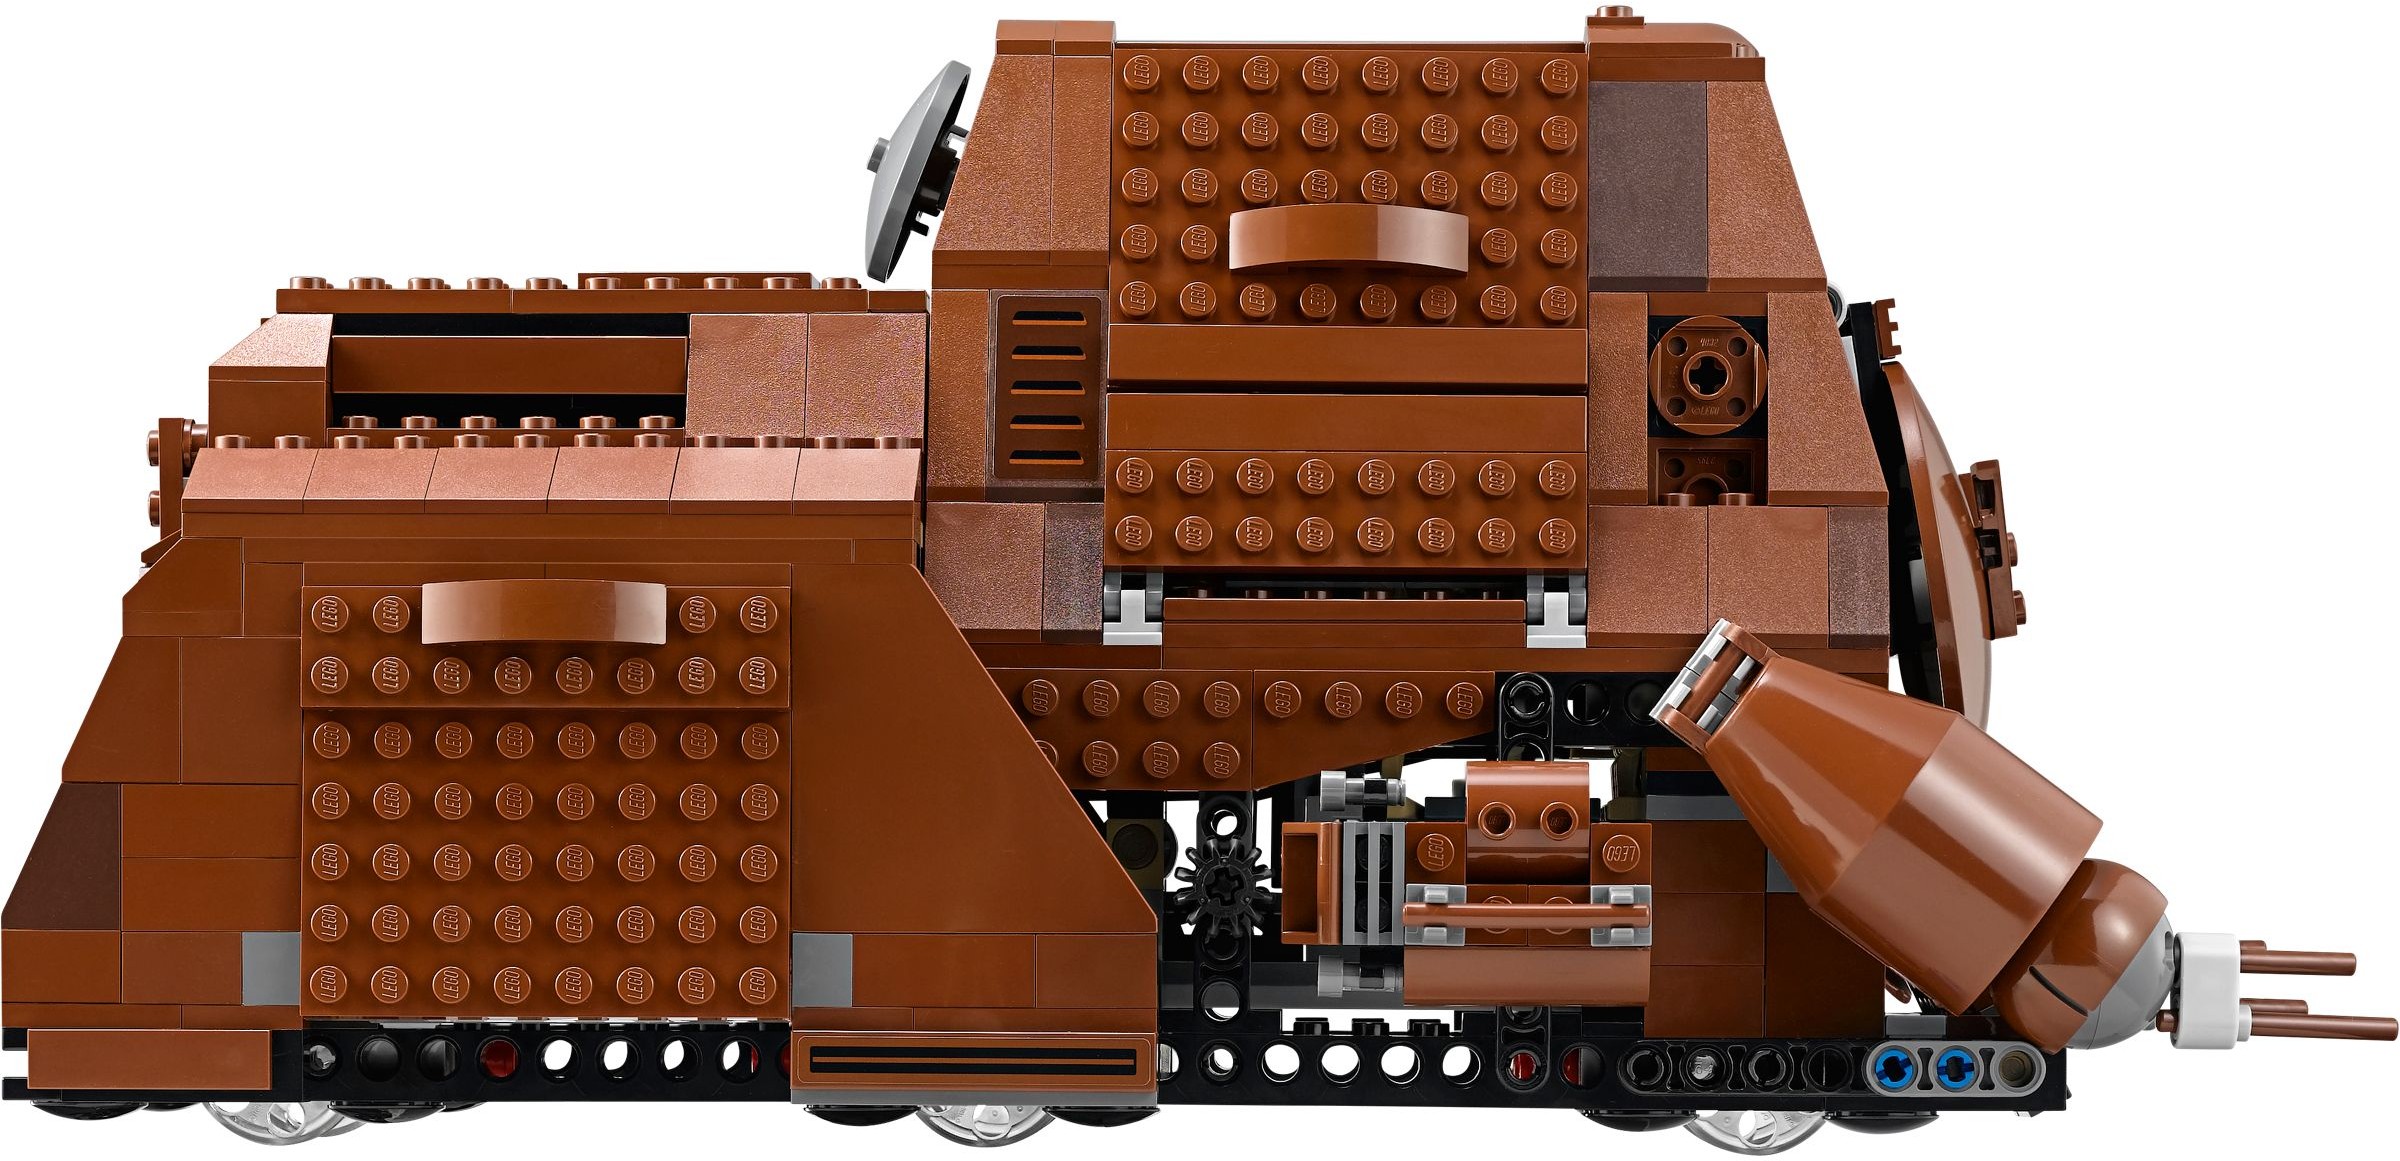 75058 MTT - Lego Star Wars sale best